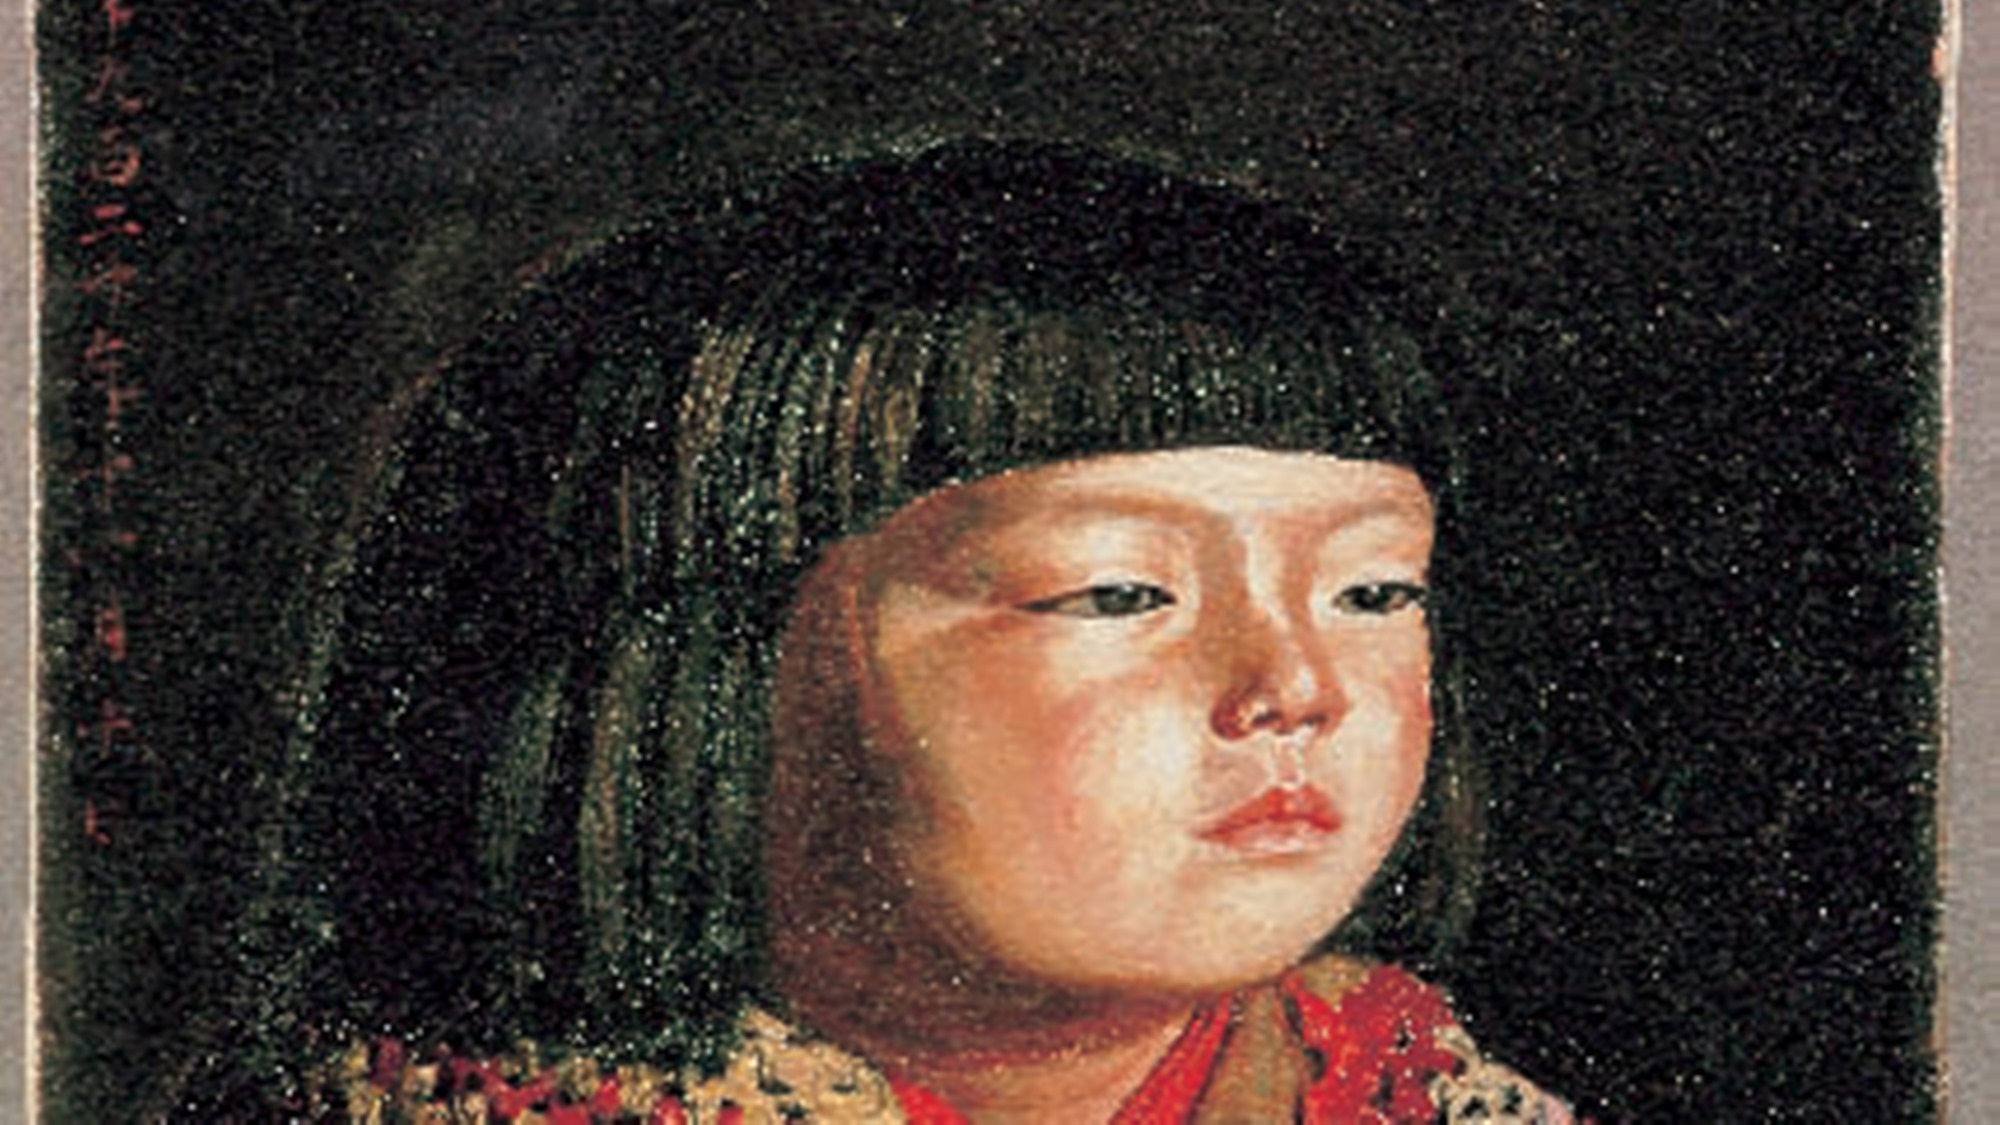 *ウッドワン美術館新館では、岸田劉生《毛糸肩掛せる麗子肖像》を展示しています。